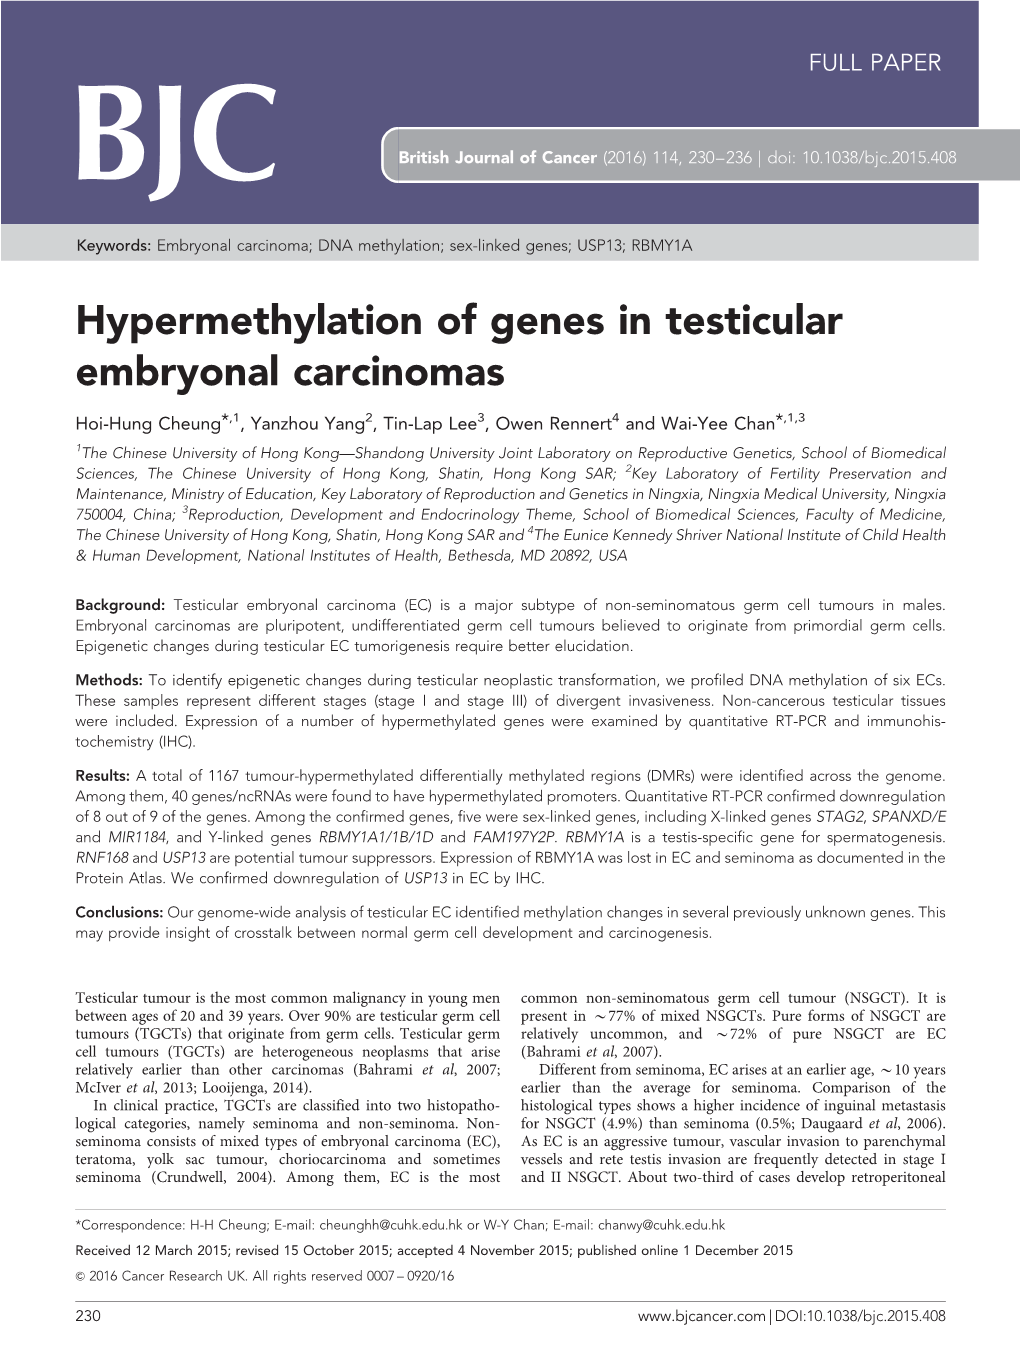 Hypermethylation of Genes in Testicular Embryonal Carcinomas